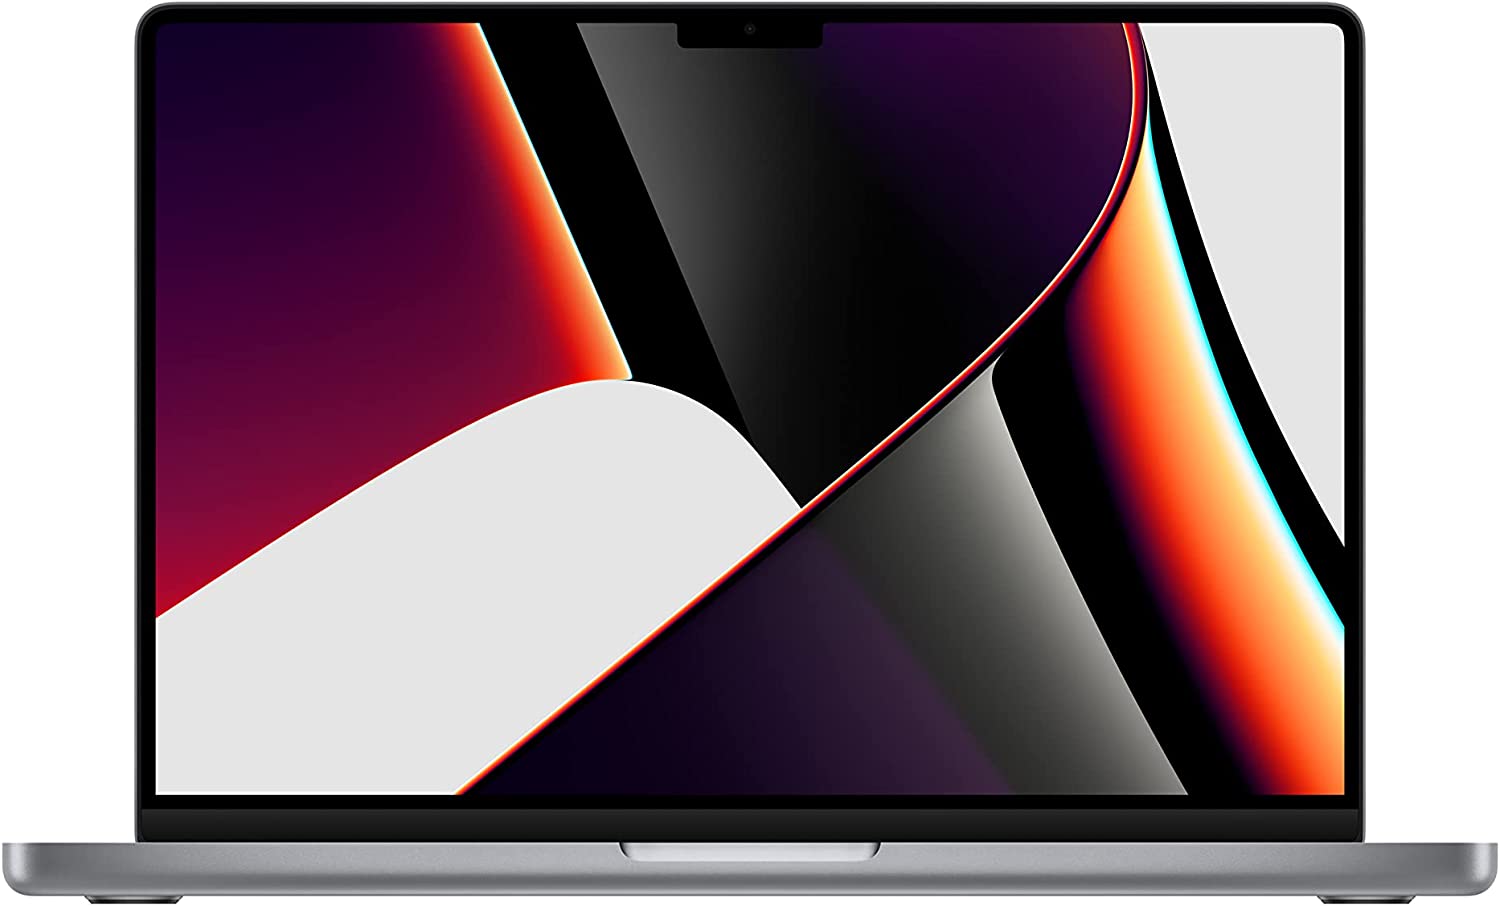 M1 MacBook Pro deals
